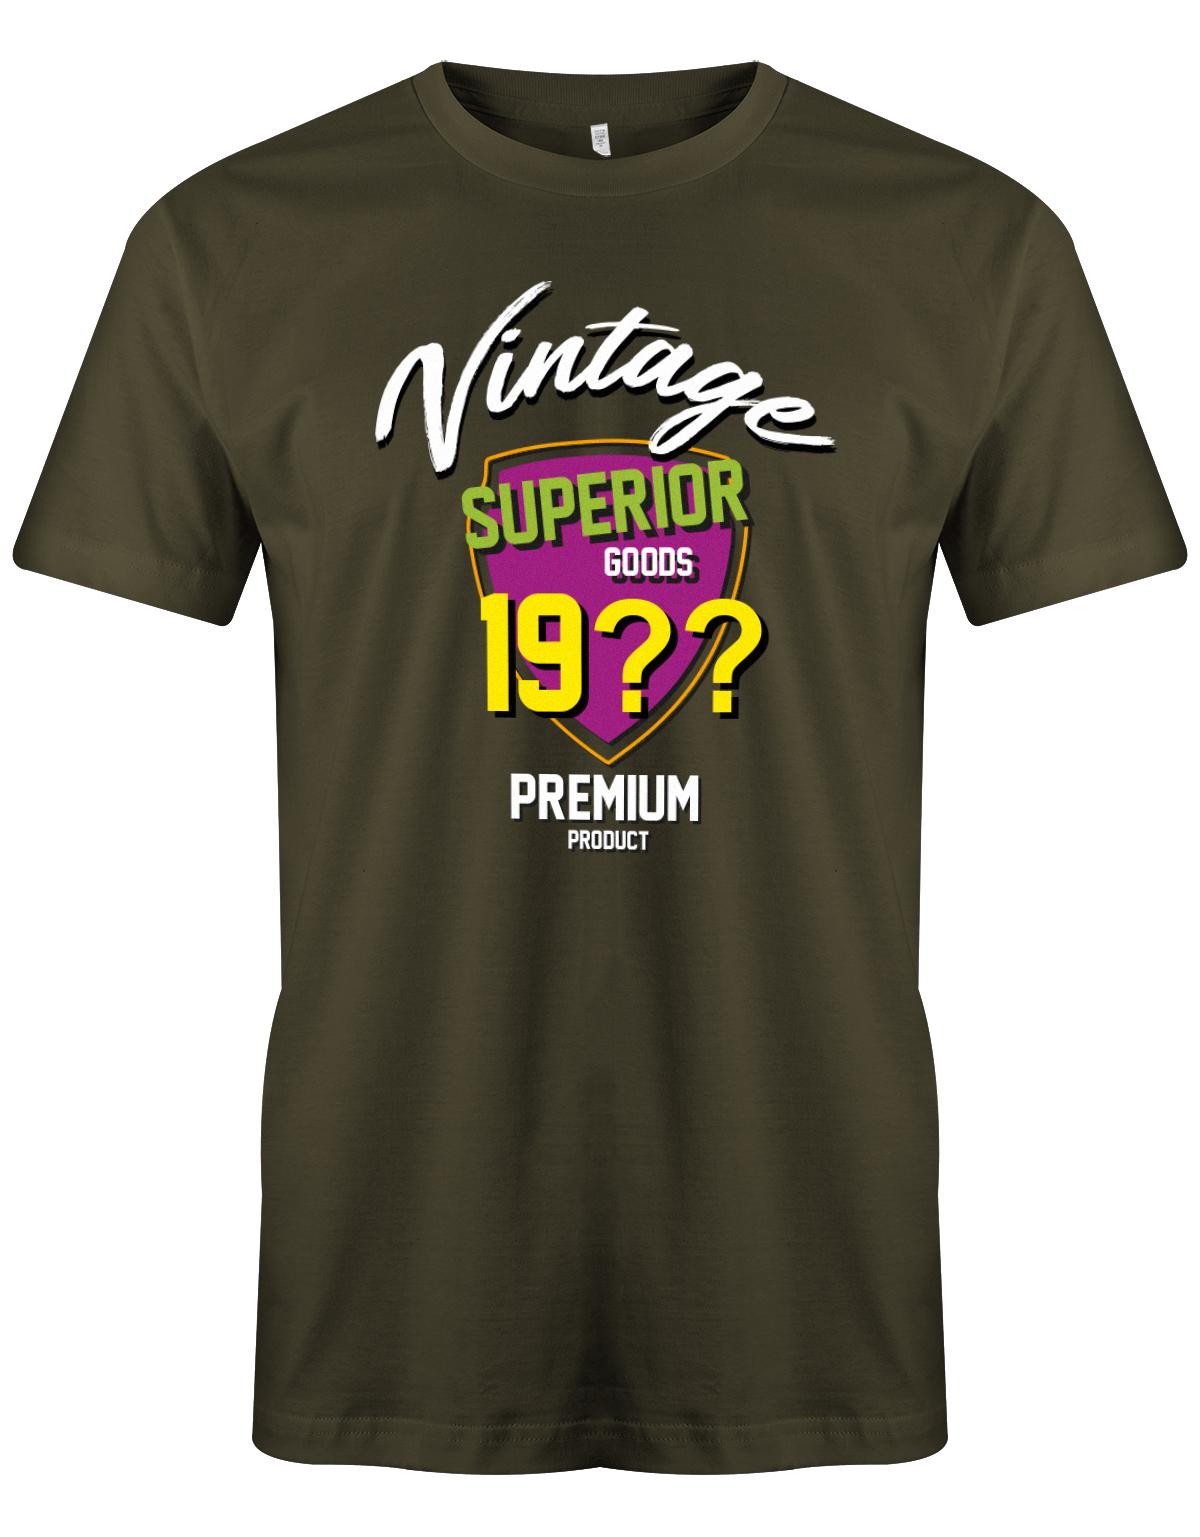 Geburtstag Tshirt für Männer Vintage Superior goods Personalisiert mit Geburtsjahr Premium Product Army